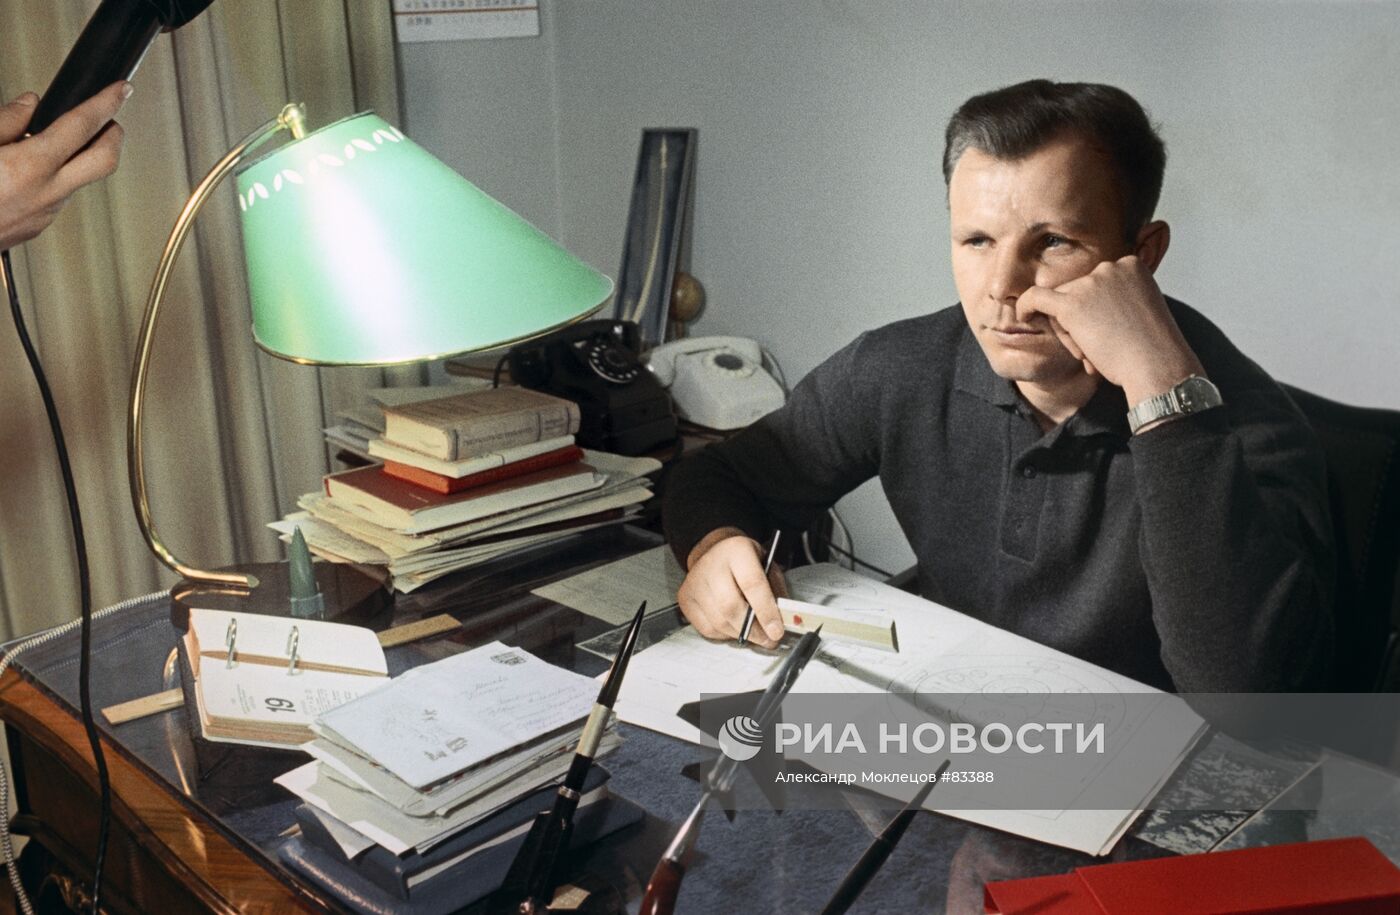 Юрий Гагарин дома в рабочем кабинете